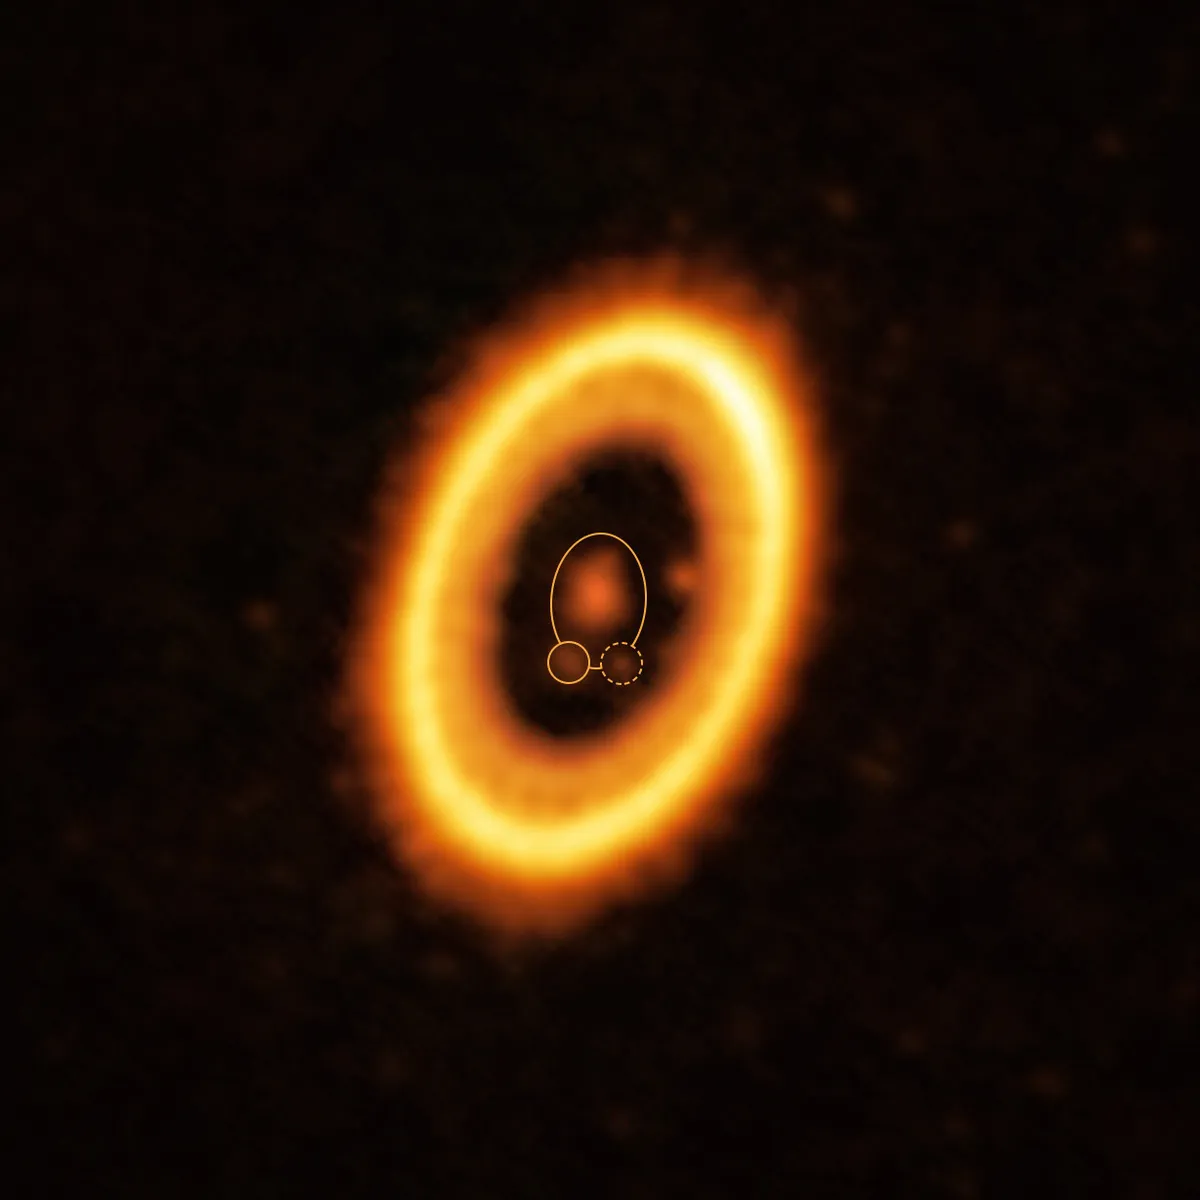 الصورة تظهر نظام PDS 70، حيث يمكن مشاهدة الكواكب التي تدور في نفس المدار، وهي محددة بدائرة. تم التقاطها بواسطة: أولغا بالسالوبري-روزا وآخرون من مرصد Alma